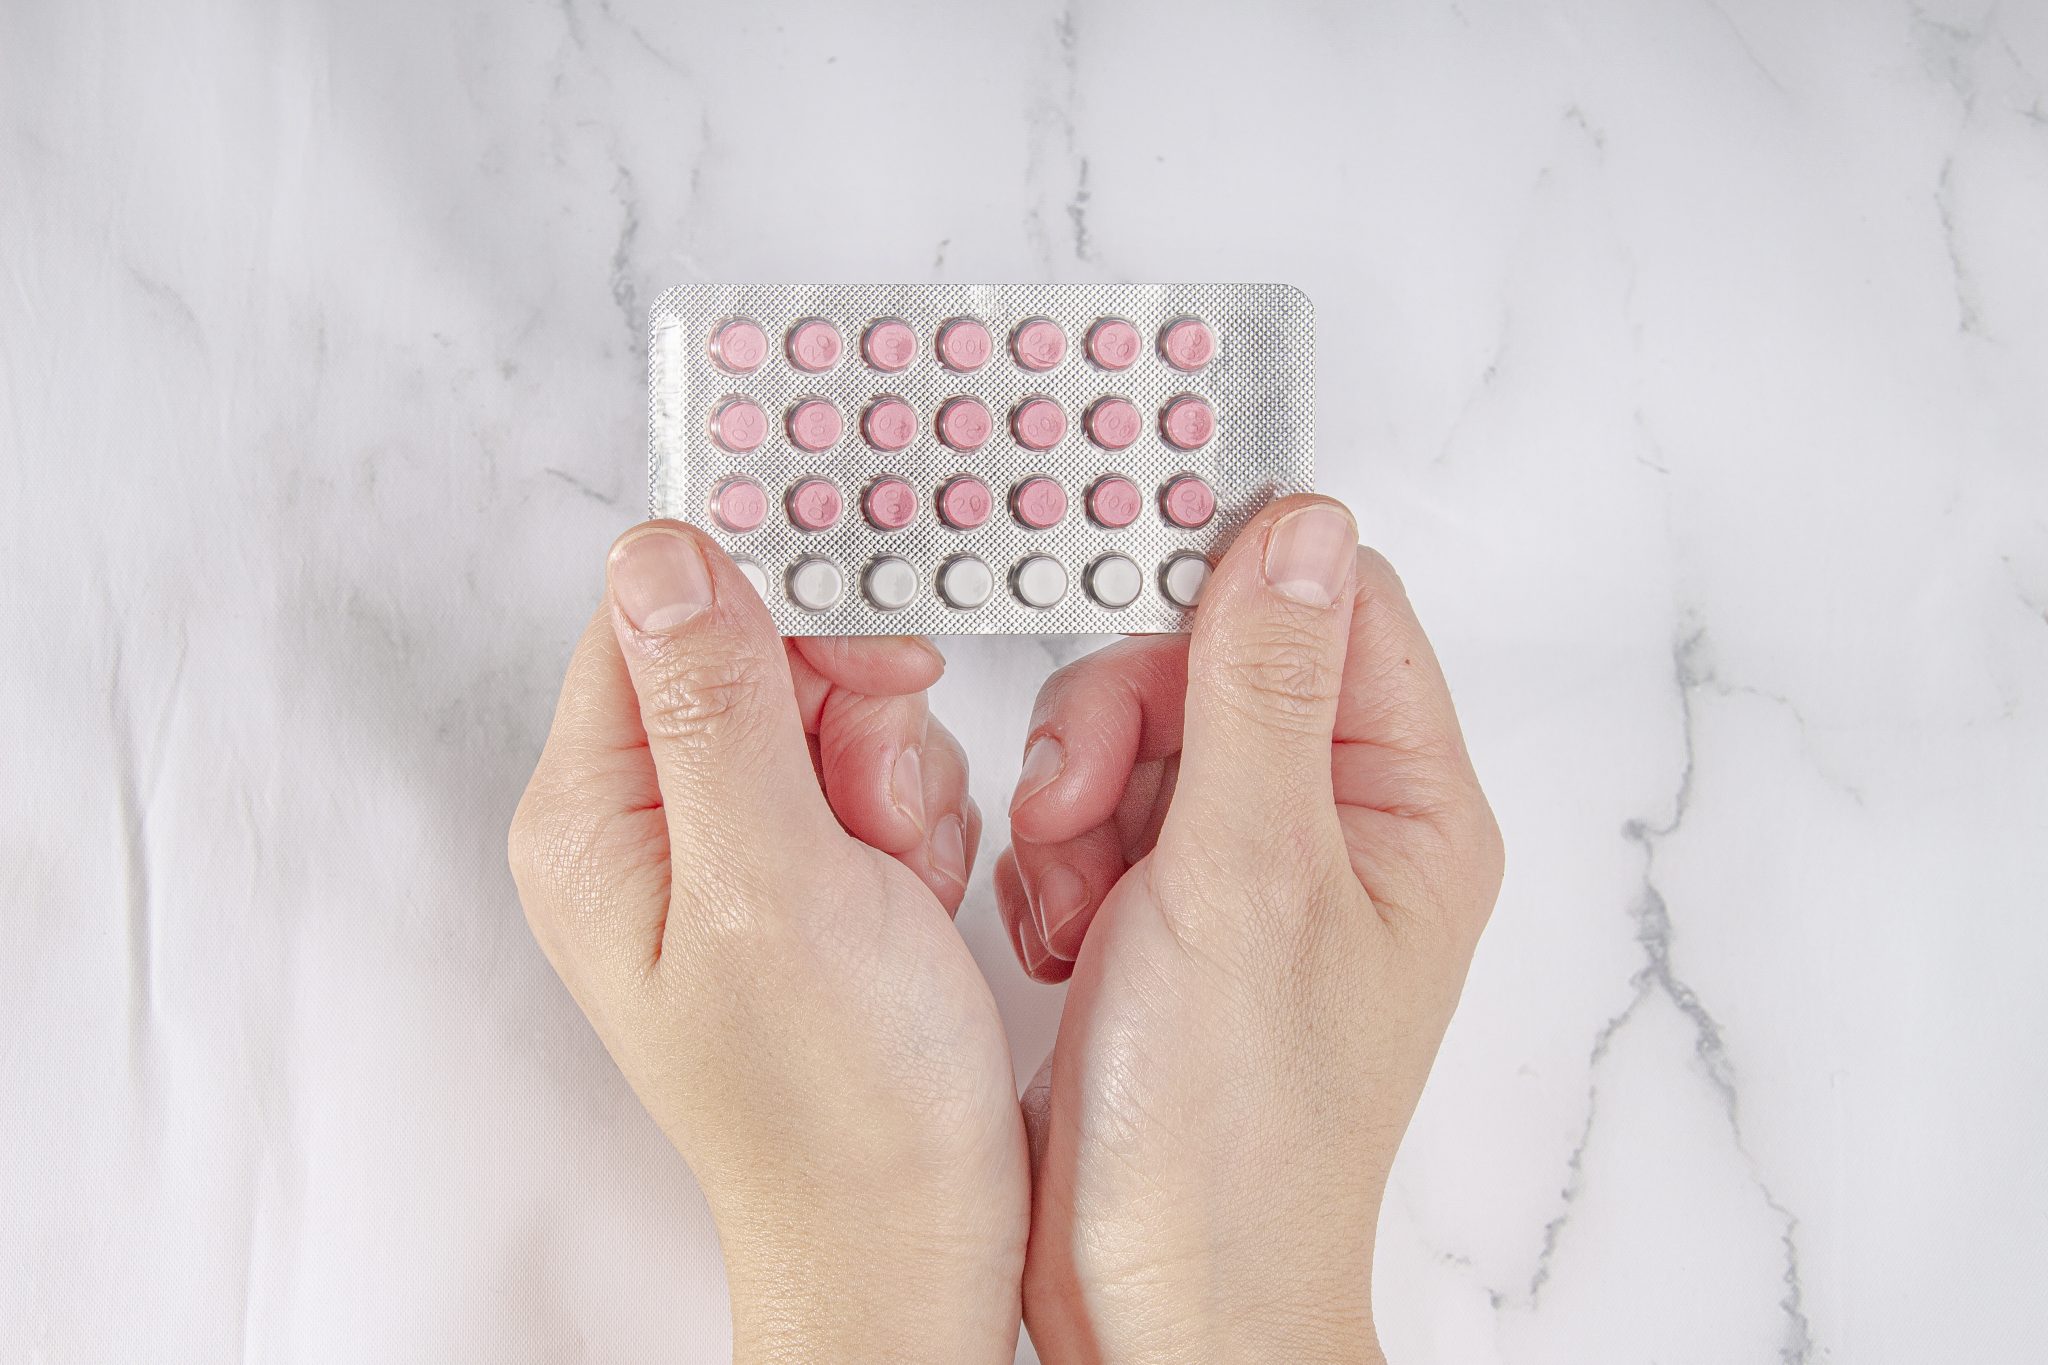 semaglutide and birth control